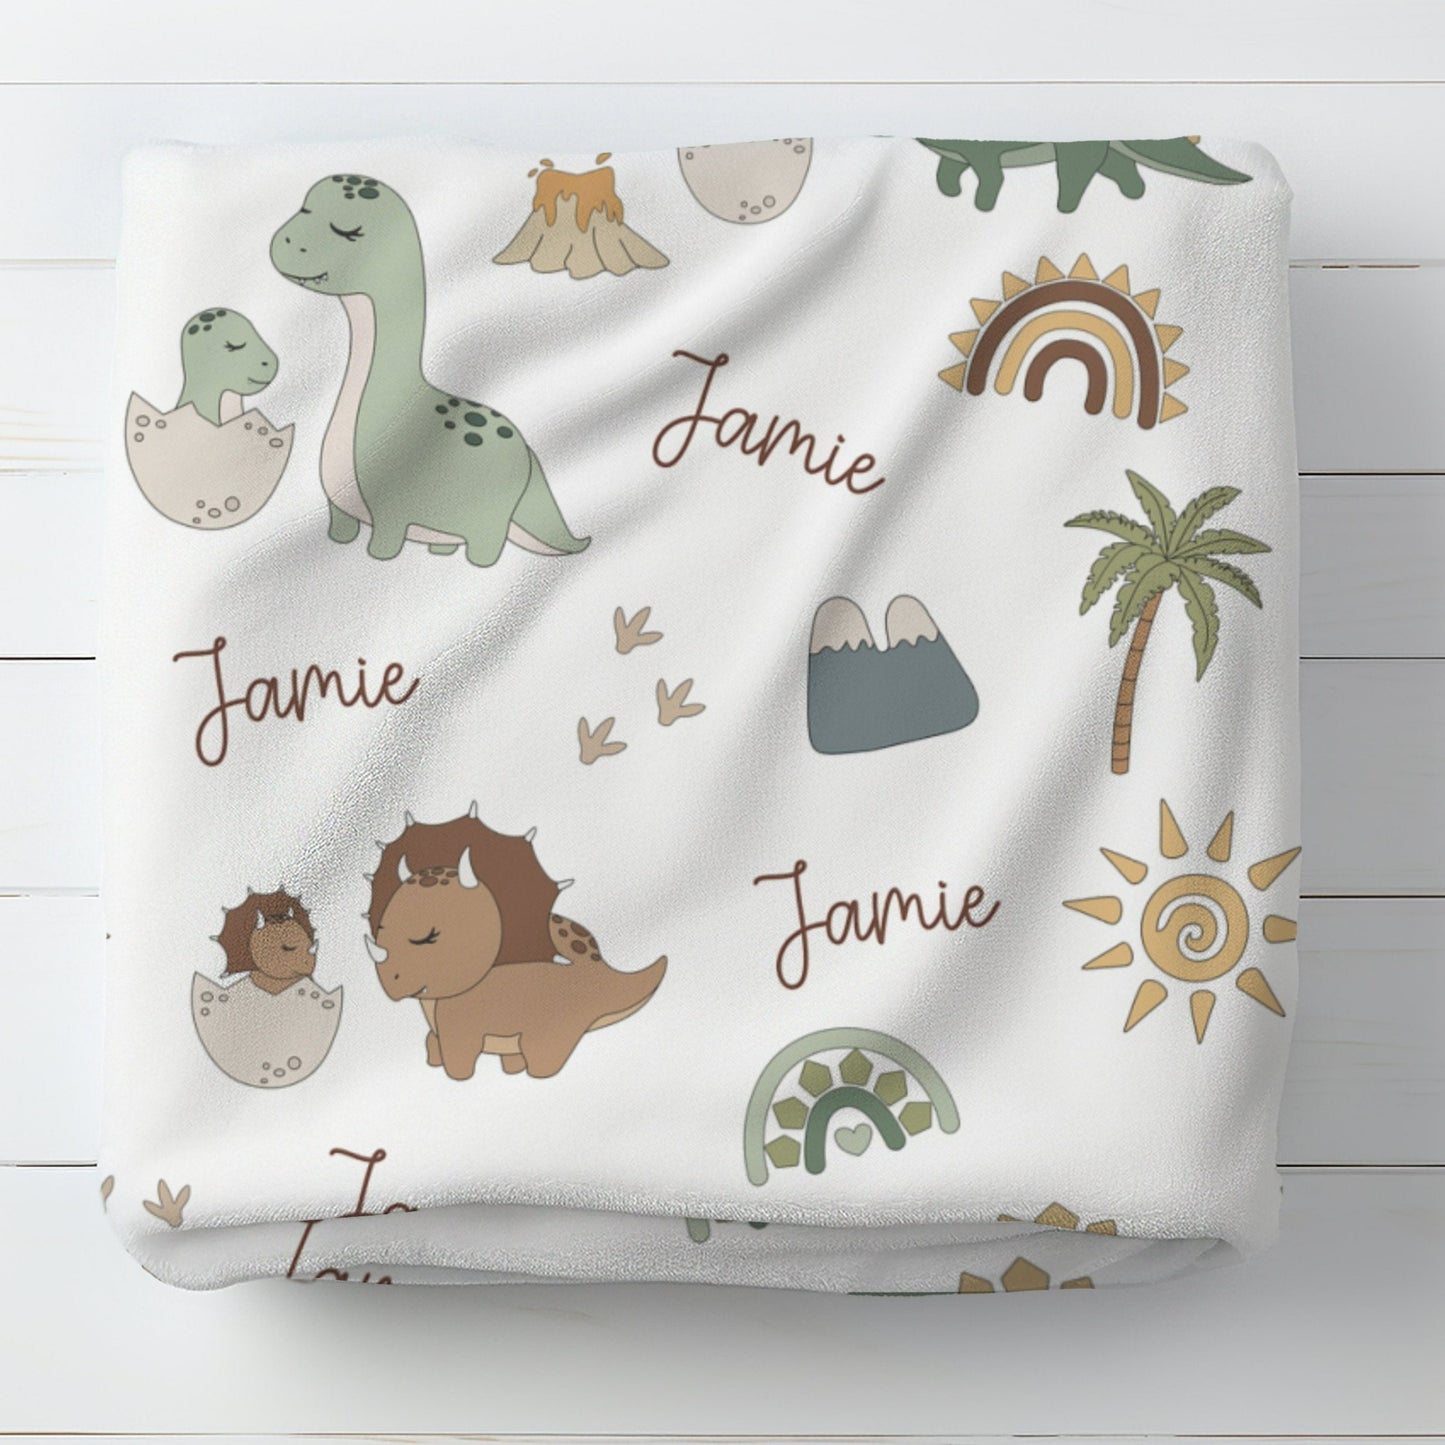 Personalised Dinosaur Baby Blanket